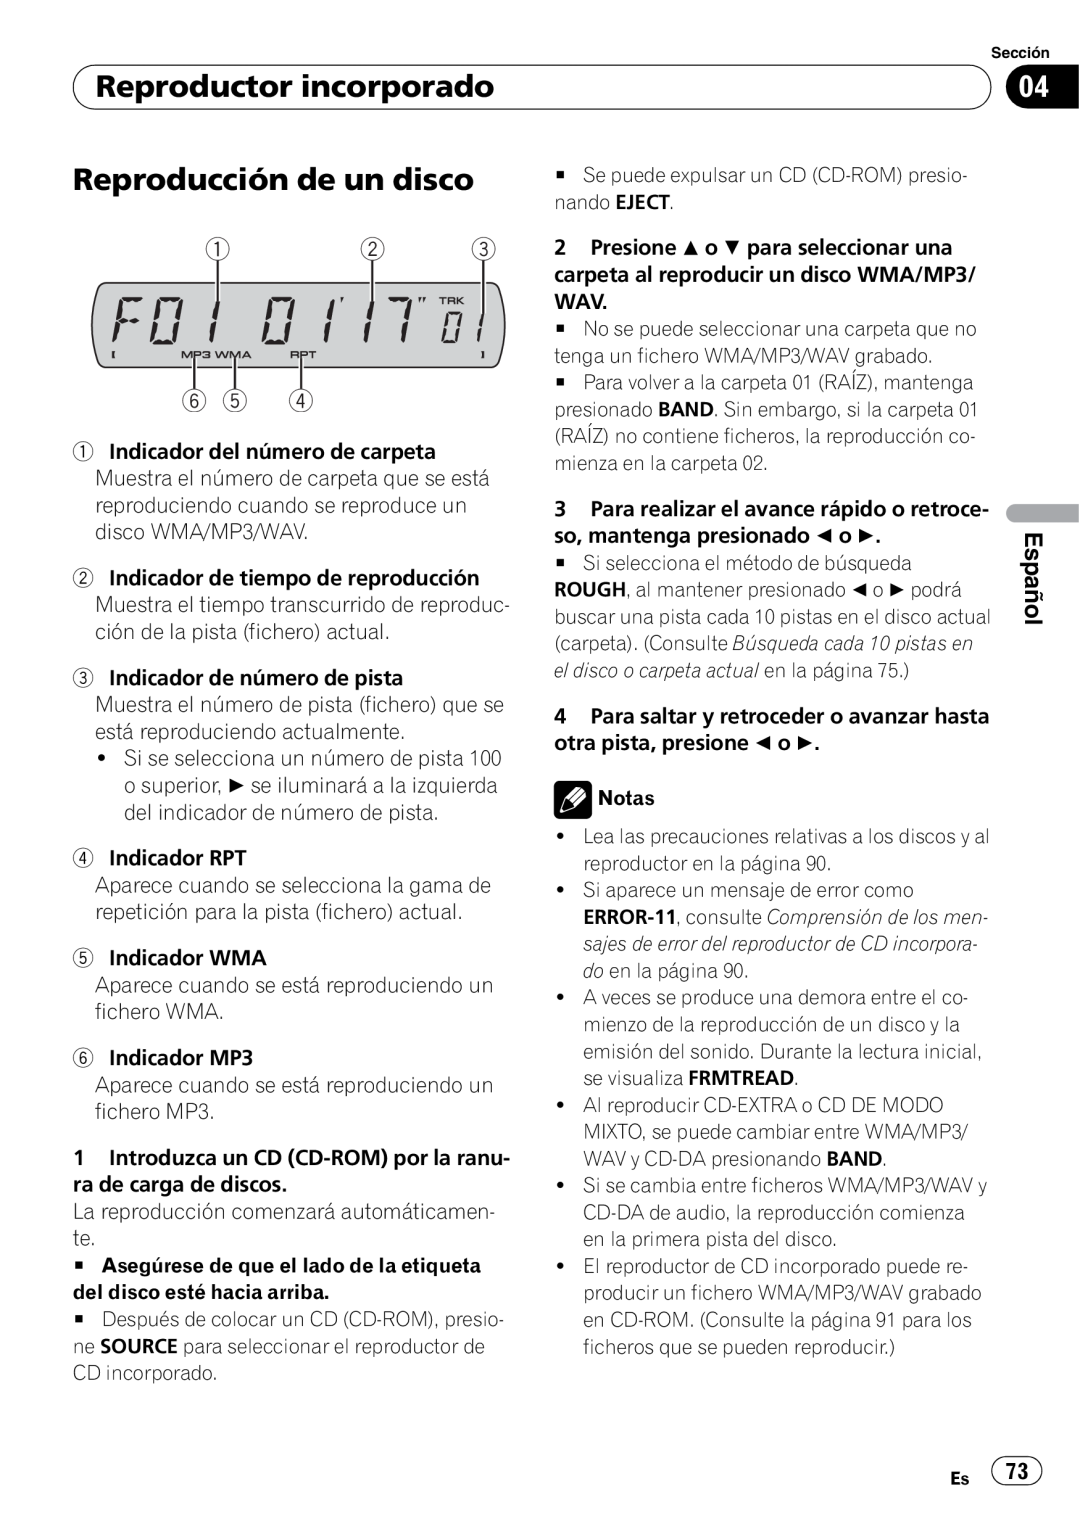 Sony DEH-P2900MP operation manual Reproductor incorporado, Reproducción de un disco, 1 2 6 5, Español 